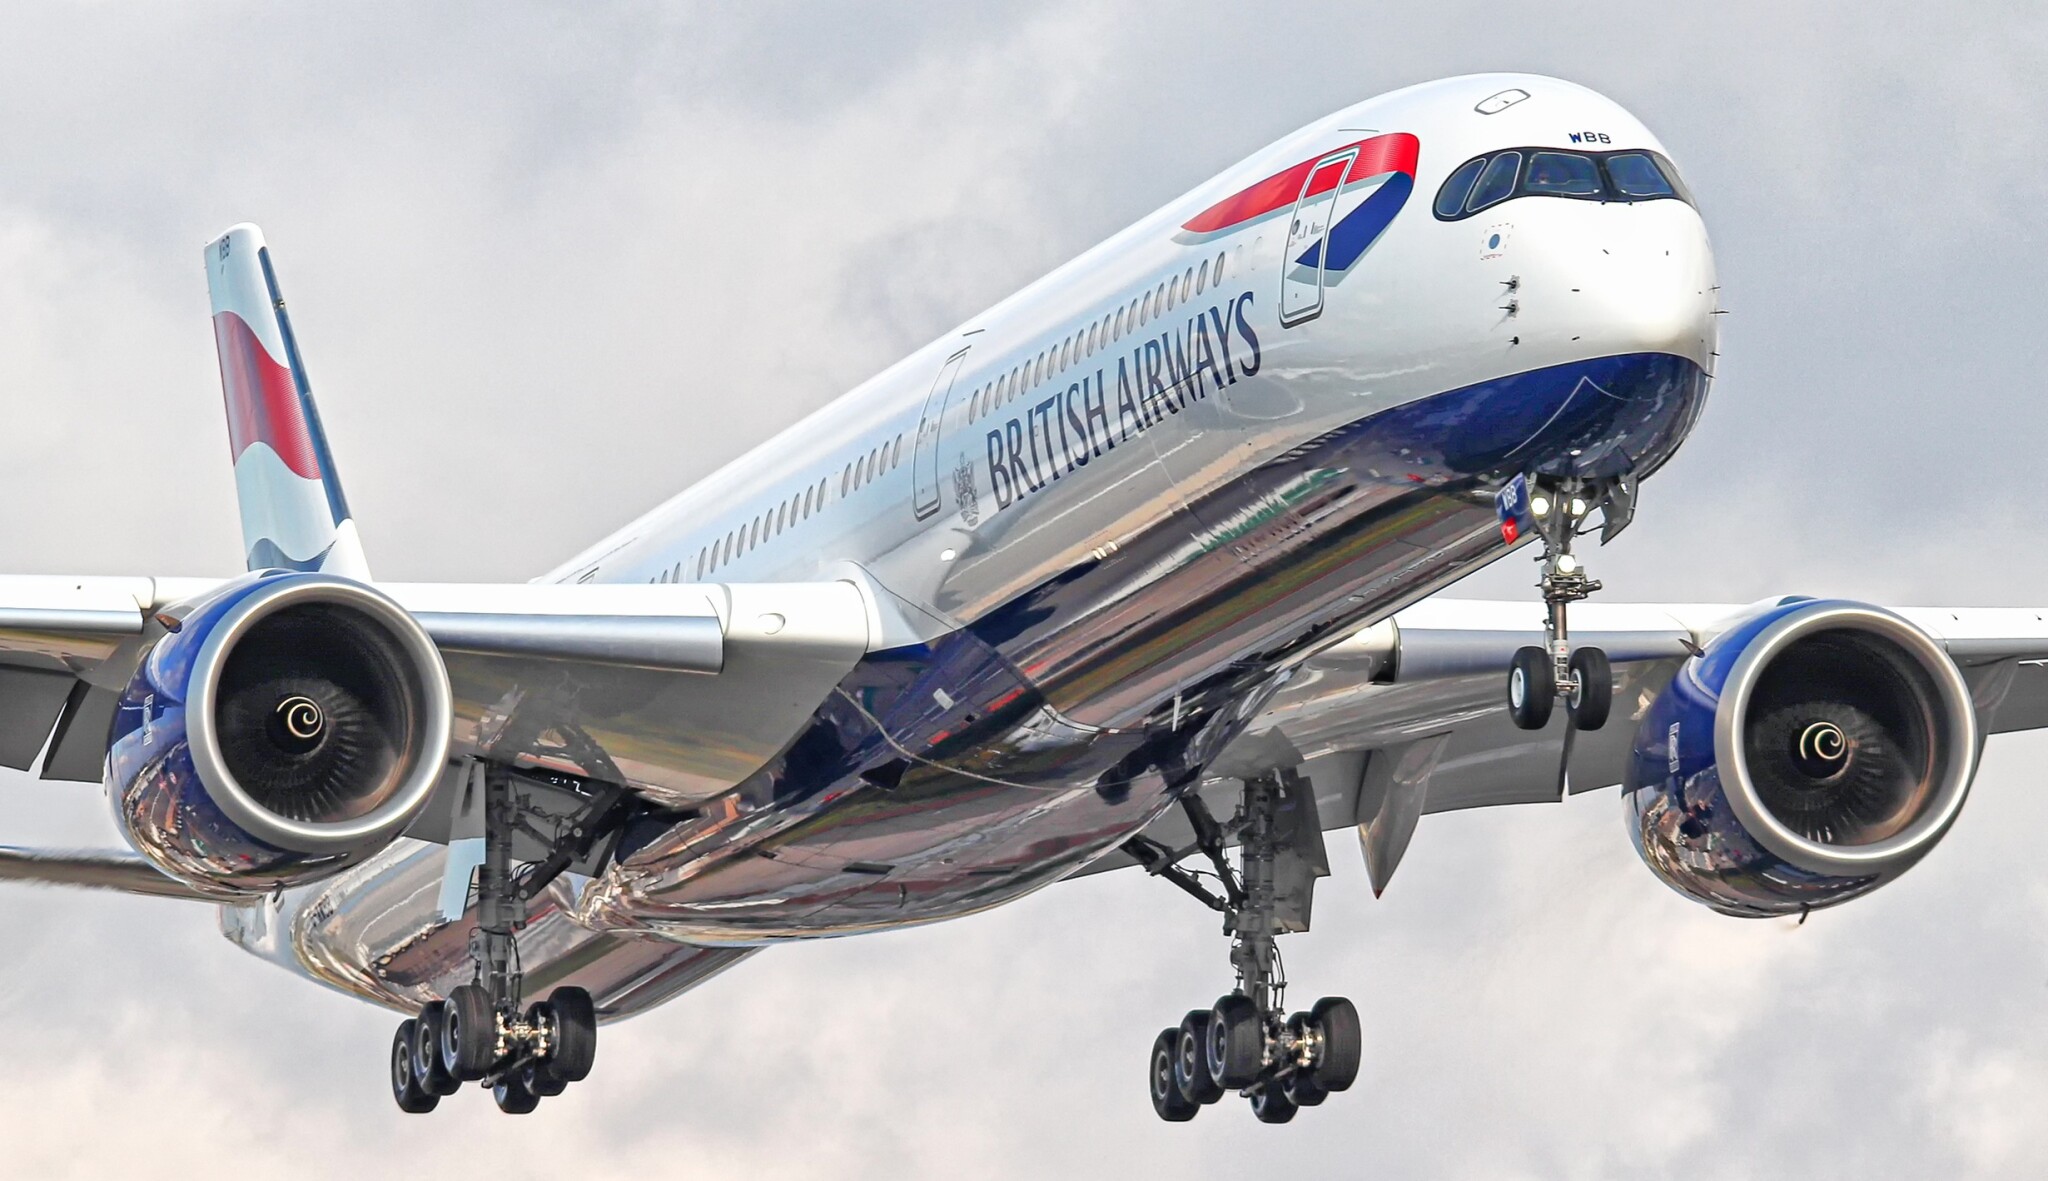 Miliardy eur v luftu. Letecká doprava se vzpamatuje nejdříve v roce 2023, říká šéf British Airways